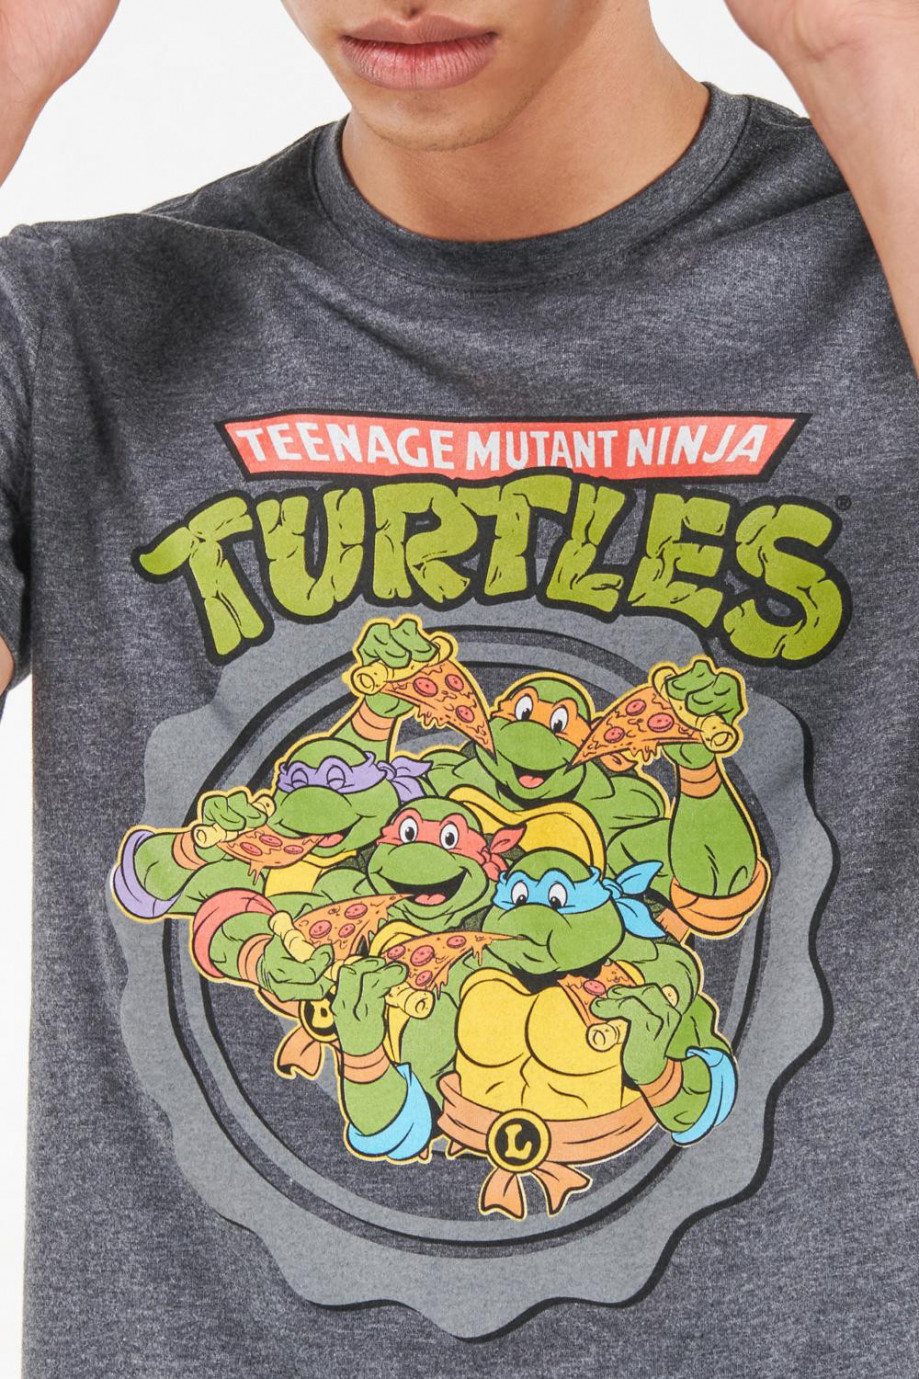 Camiseta manga corta estampado de Tortugas Ninja